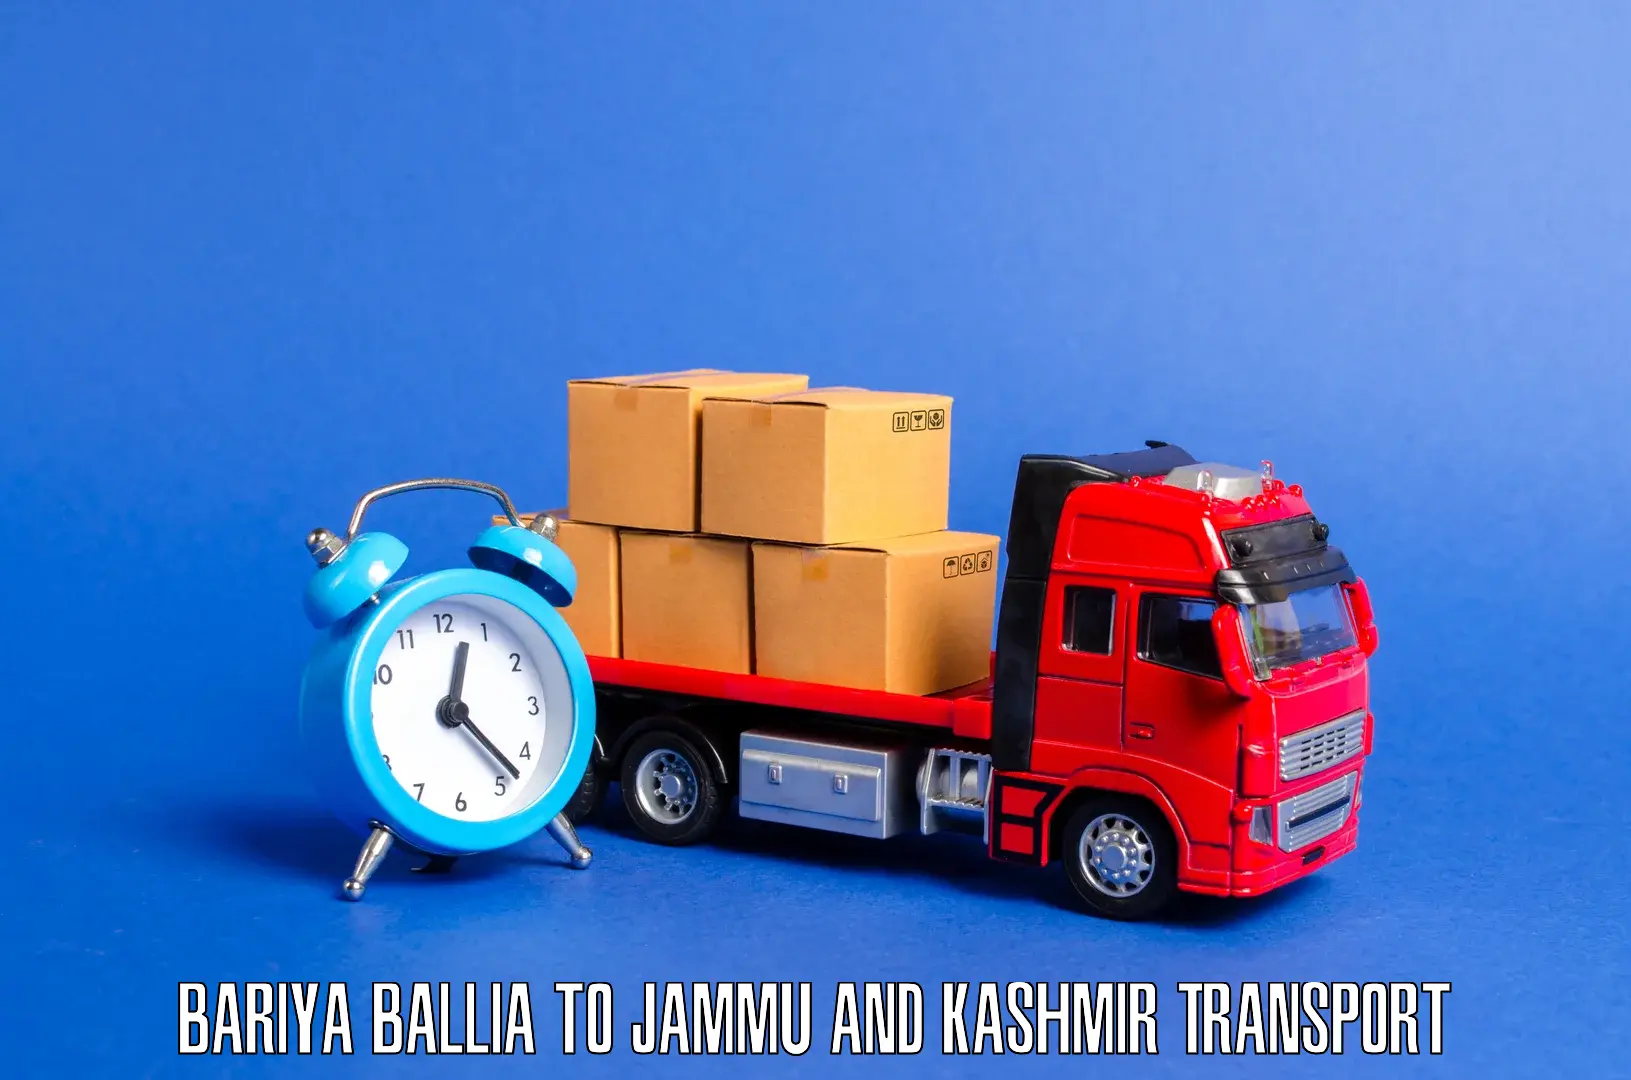 Container transport service Bariya Ballia to Kishtwar